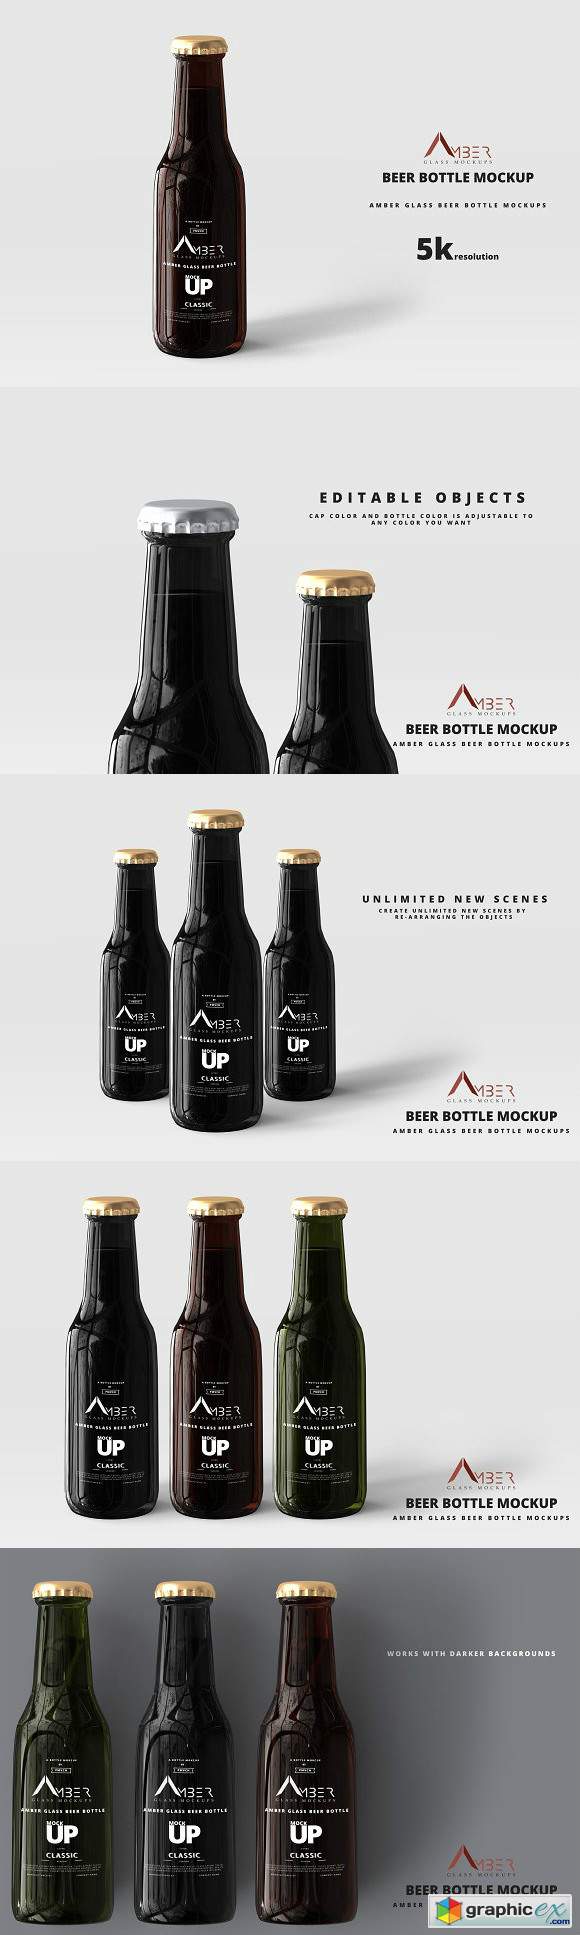 Download Amber Glass Beer Bottle Mockup 04 » Free Download Vector ...